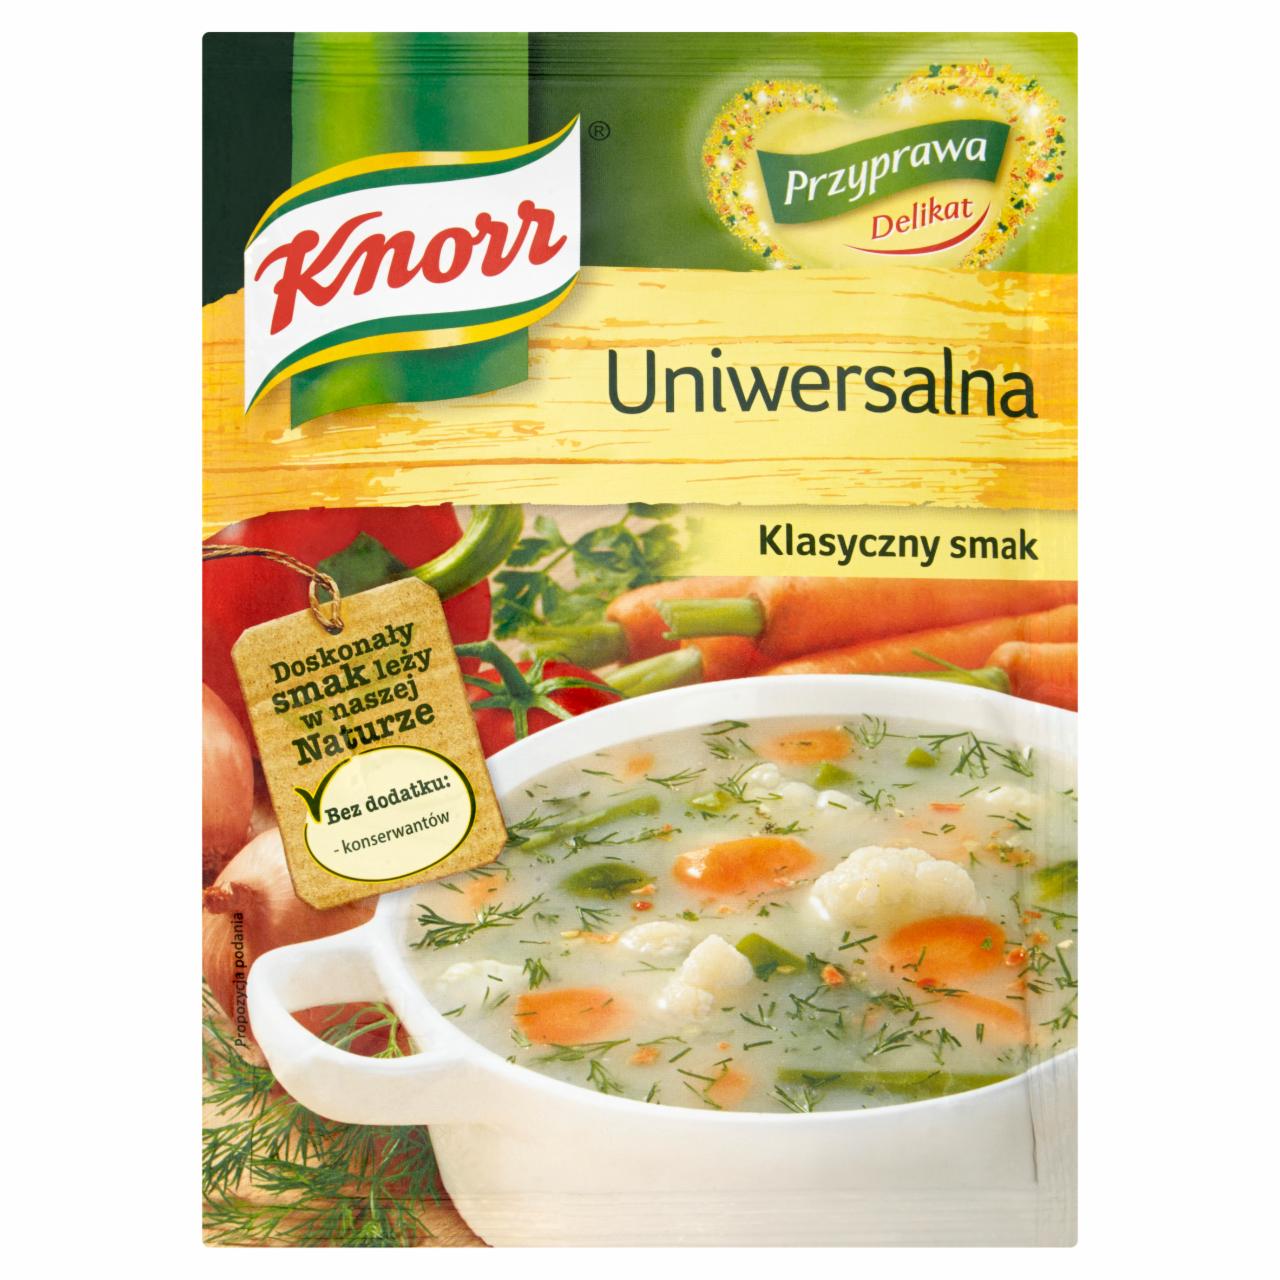 Zdjęcia - Knorr Przyprawa Delikat uniwersalna 200 g